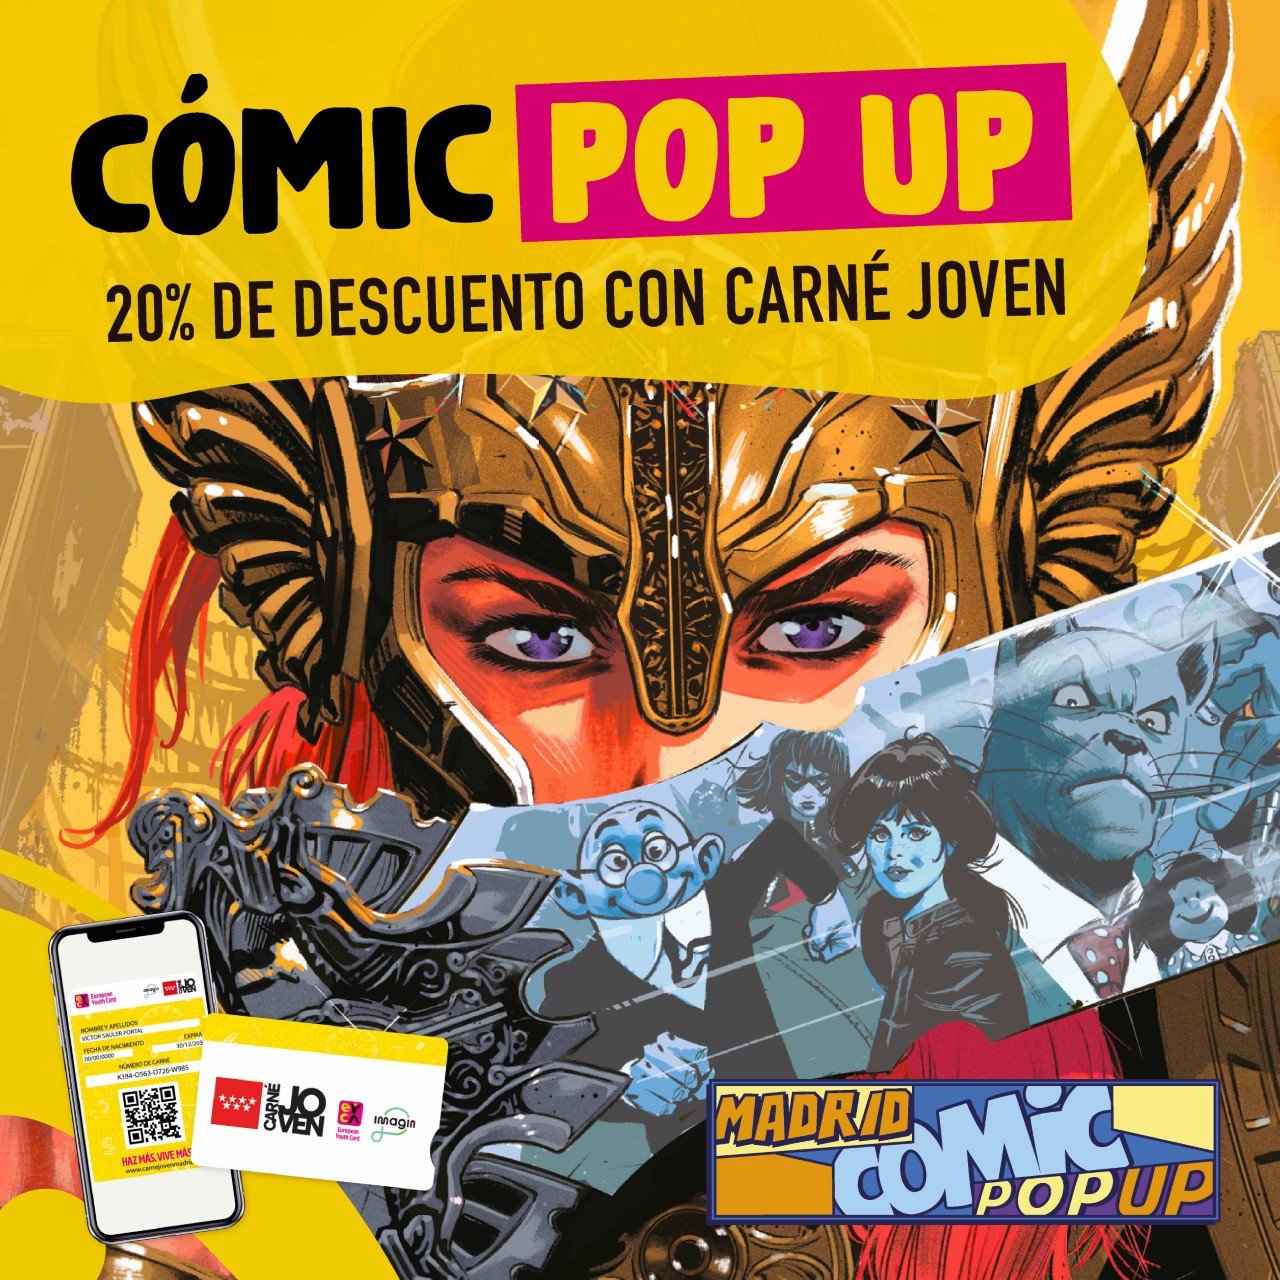 Sorteo de 60 entradas cuádruples para Madrid Comic Pop Up